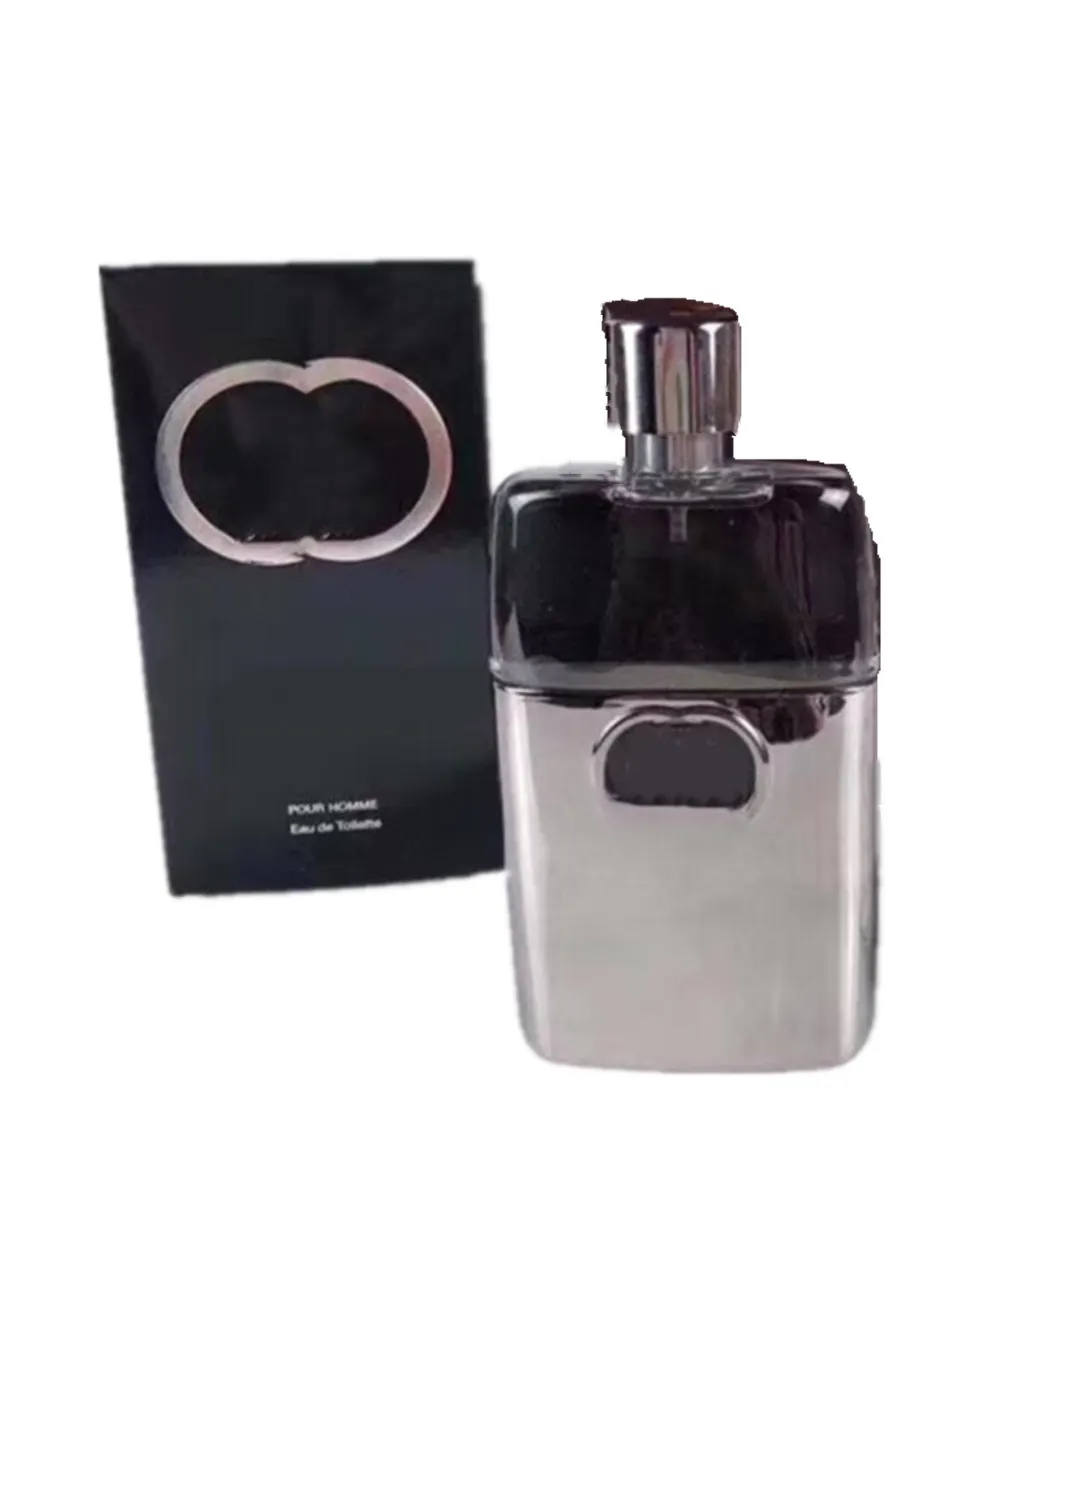 Erkekler için Lüks Tasarım Köln parfüm 90ml suçlu siyah şişe en yüksek sürüm Koku sprey klasik stil uzun ömürlü hızlı gemi